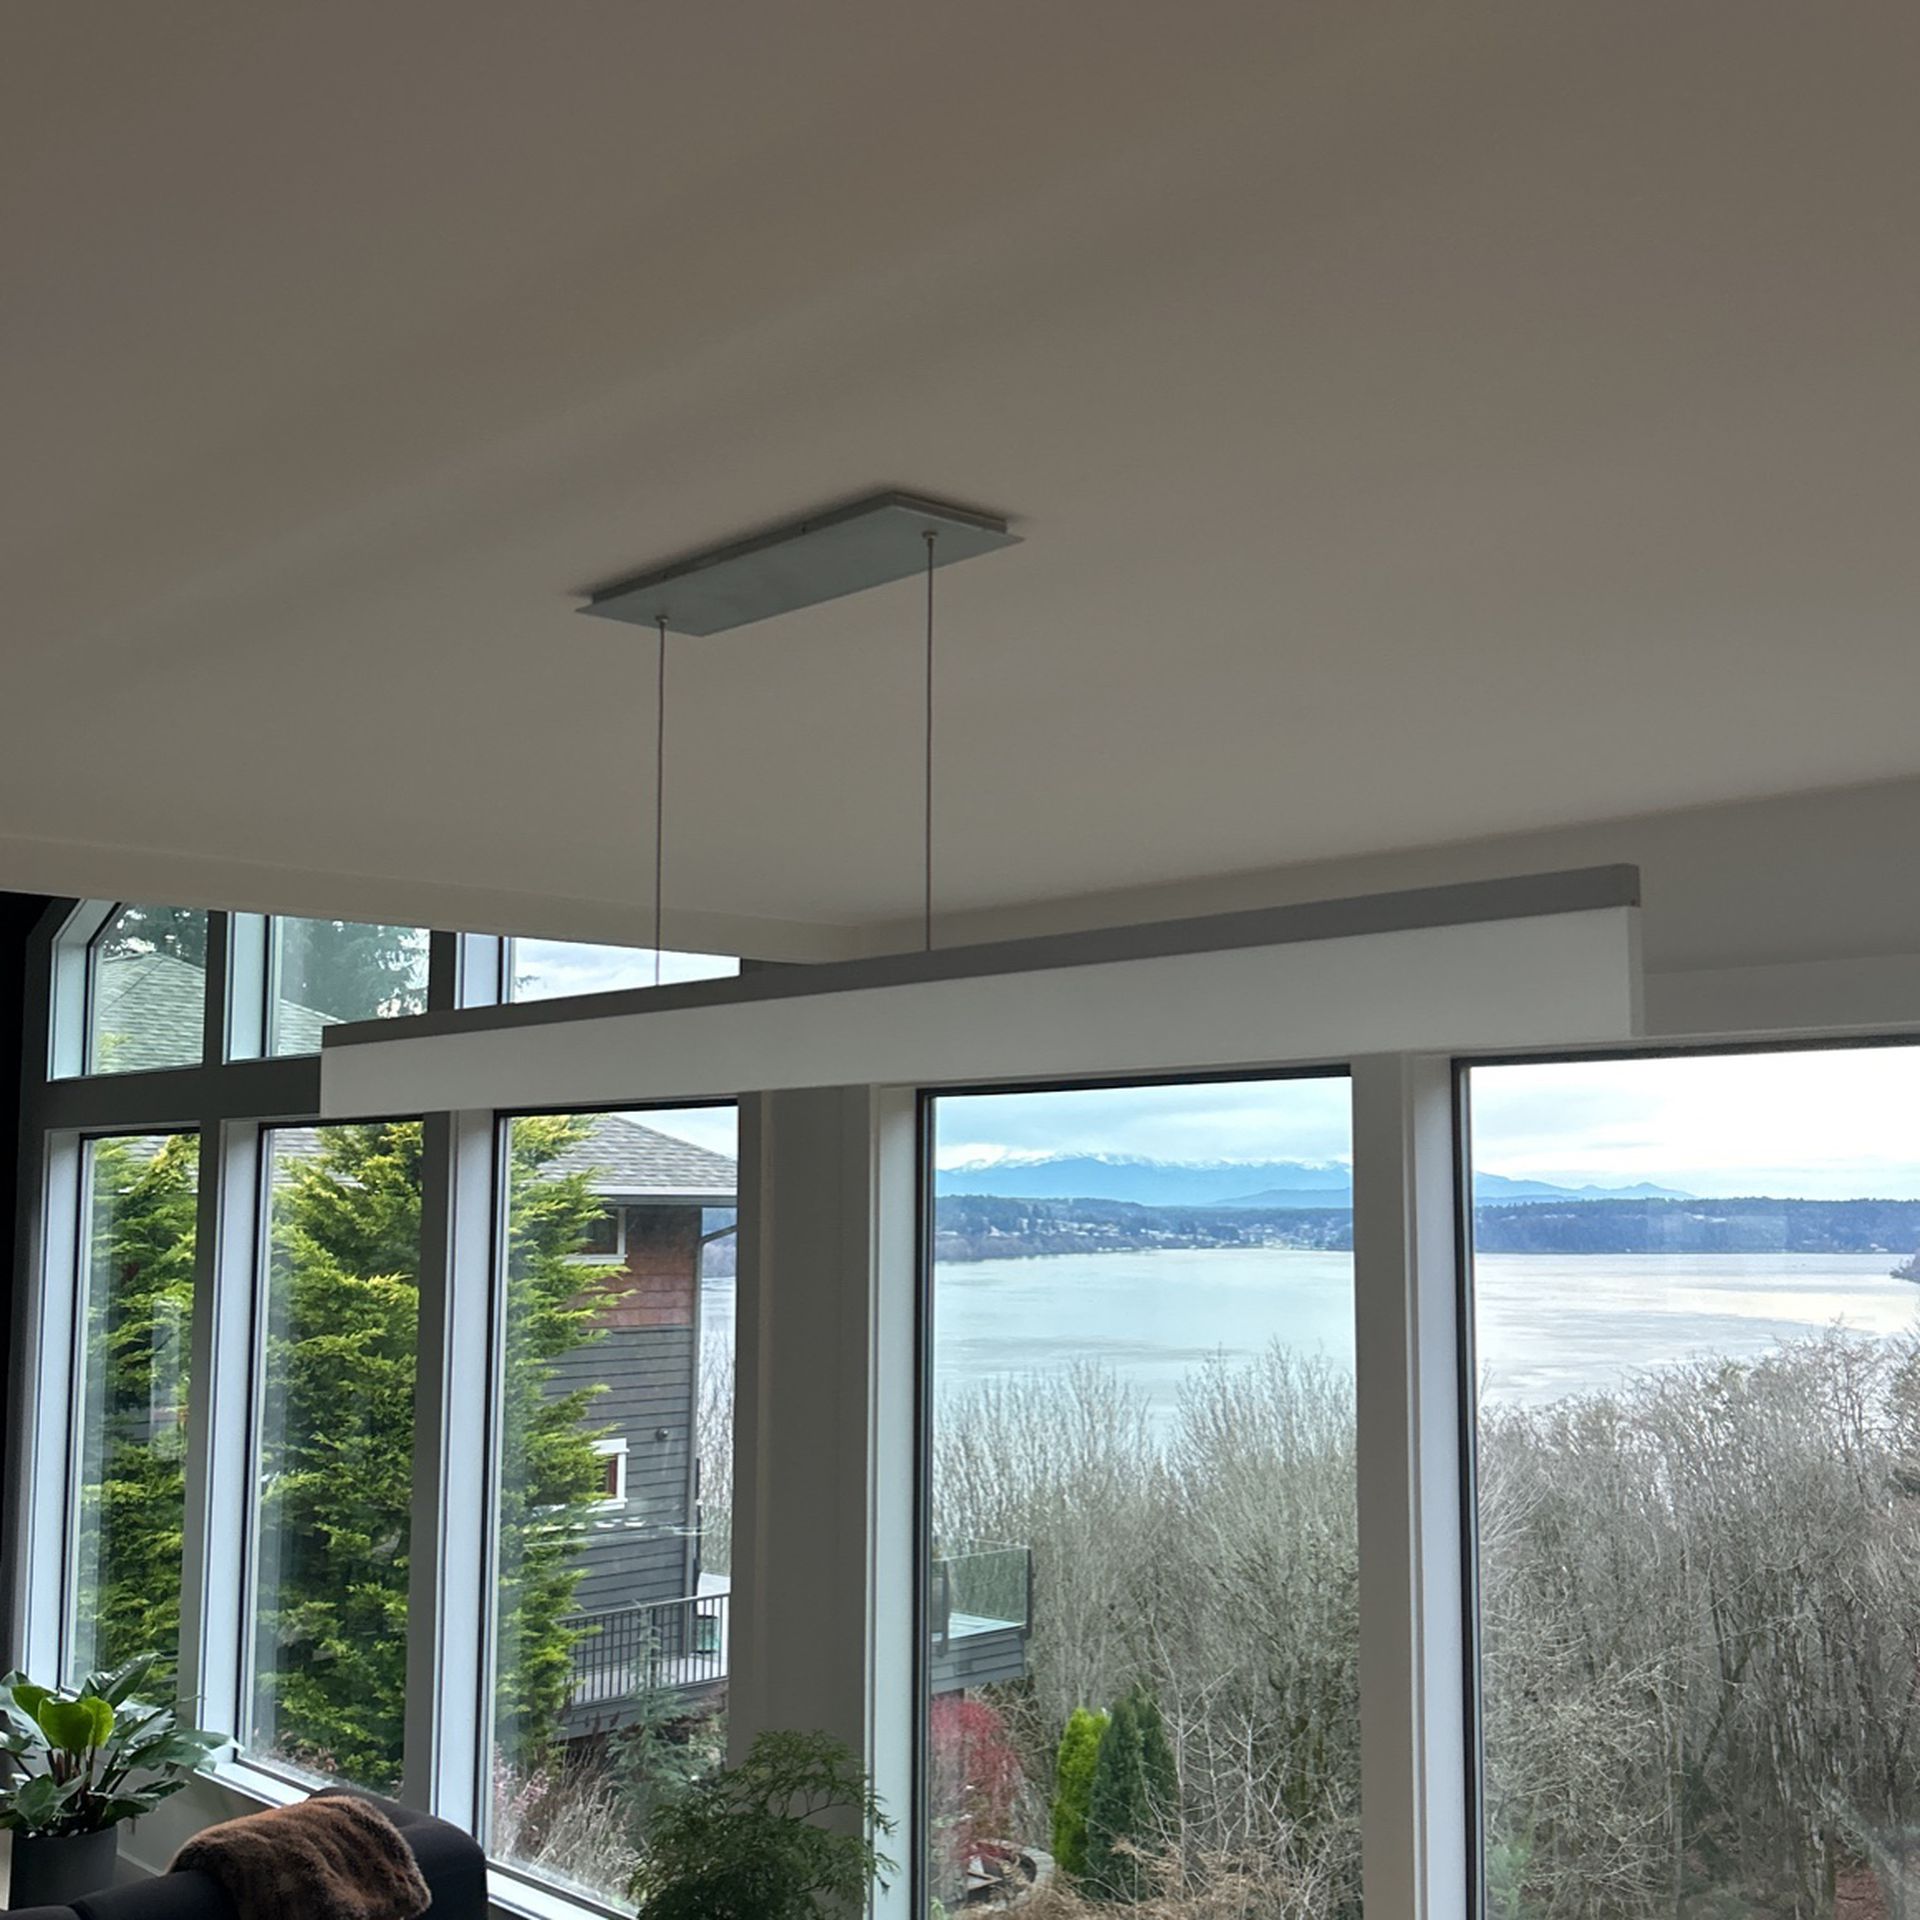 65” Linear Ceiling Light Fixture